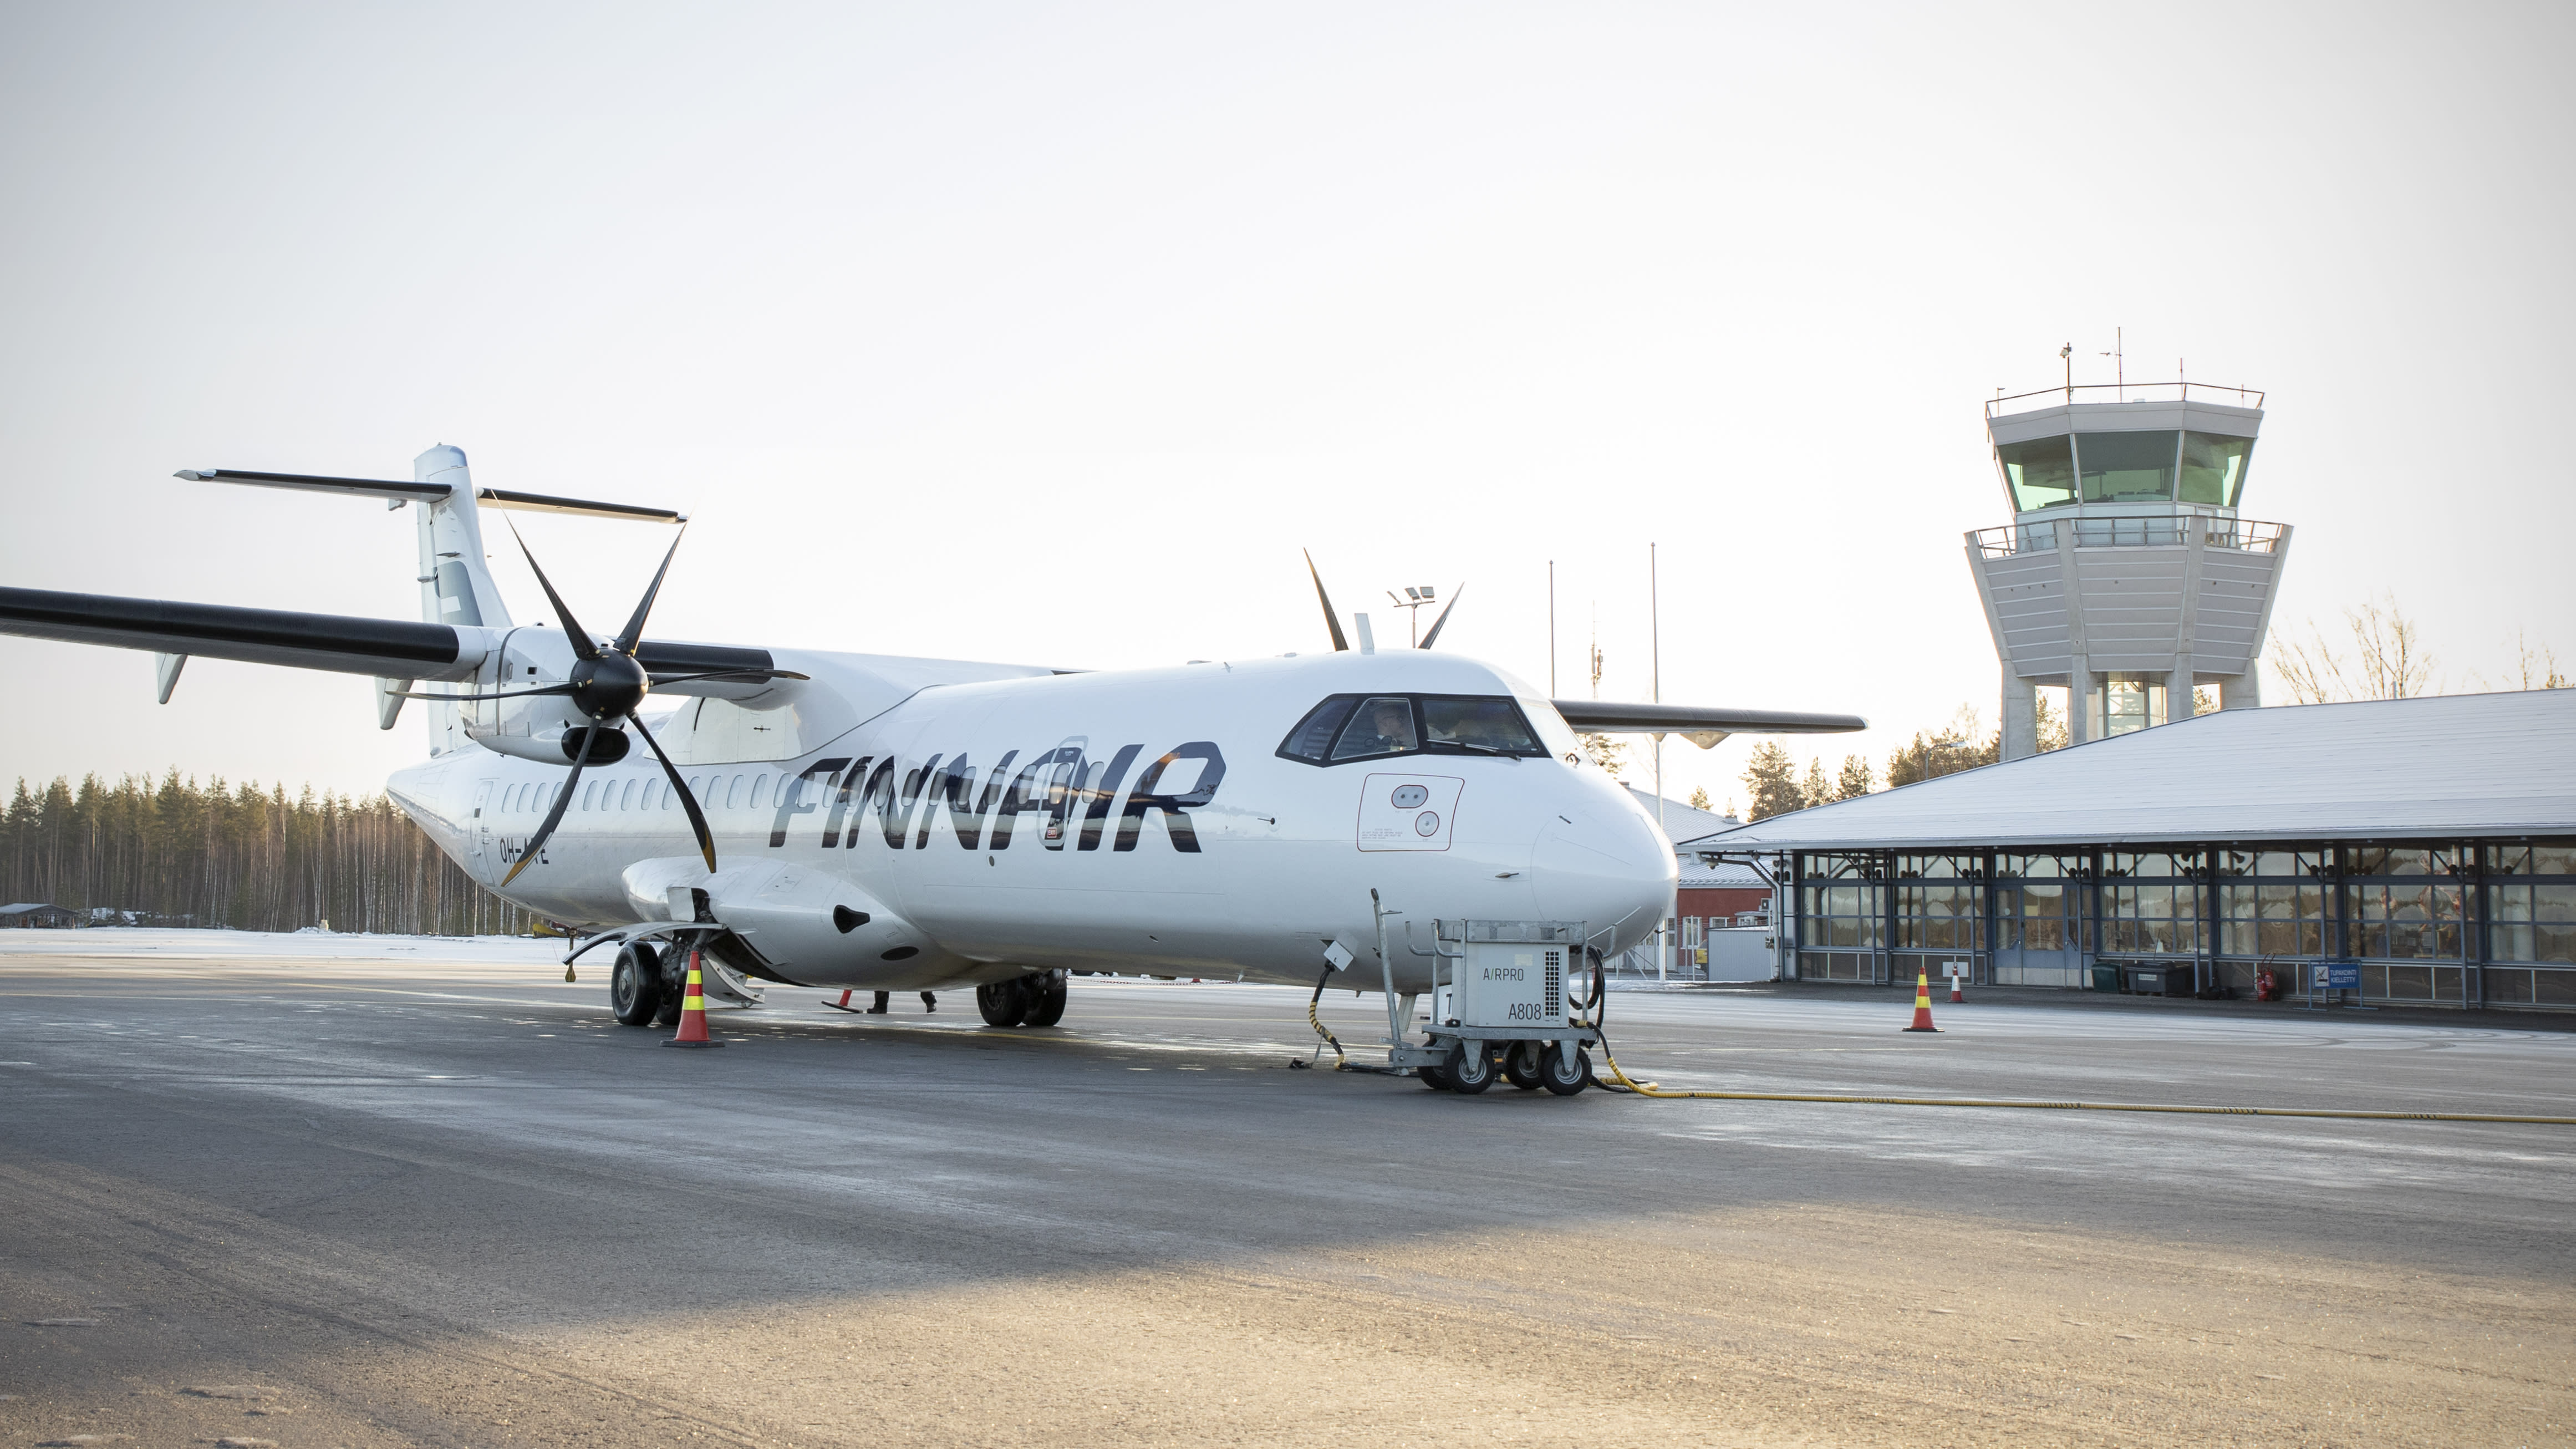 Finland harus mengharamkan penerbangan domestik kurang daripada 400 km, kata seorang pakar